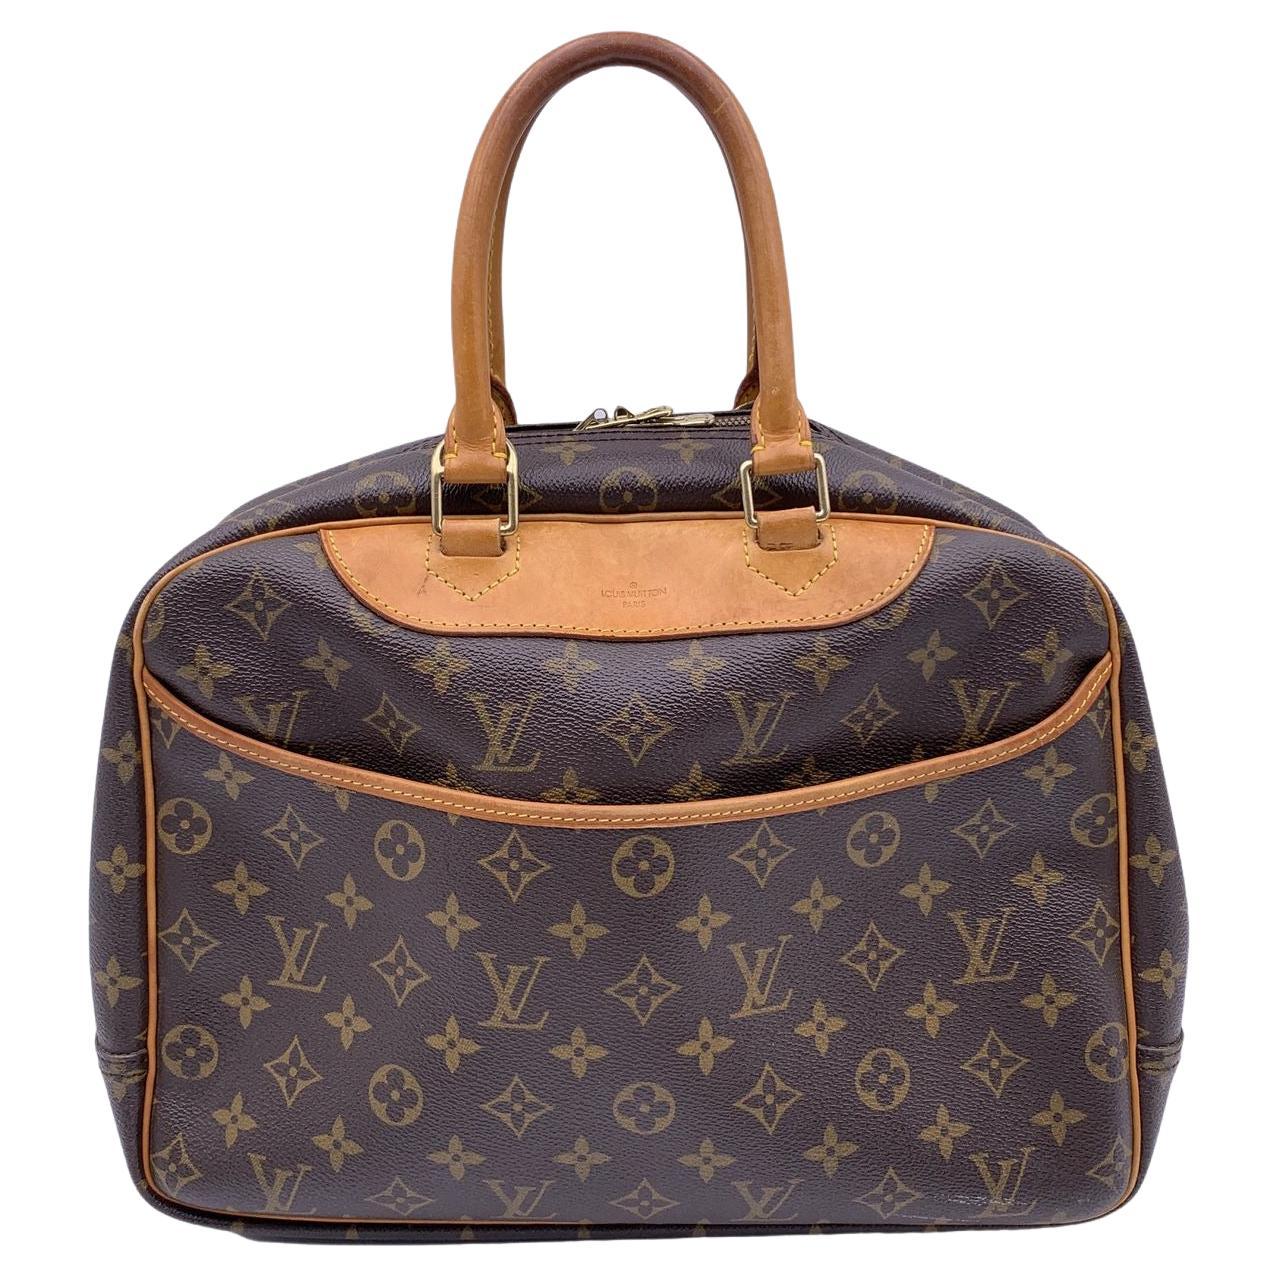 Louis Vuitton Louis Vuitton Deauville Monogram Canvas Handbag